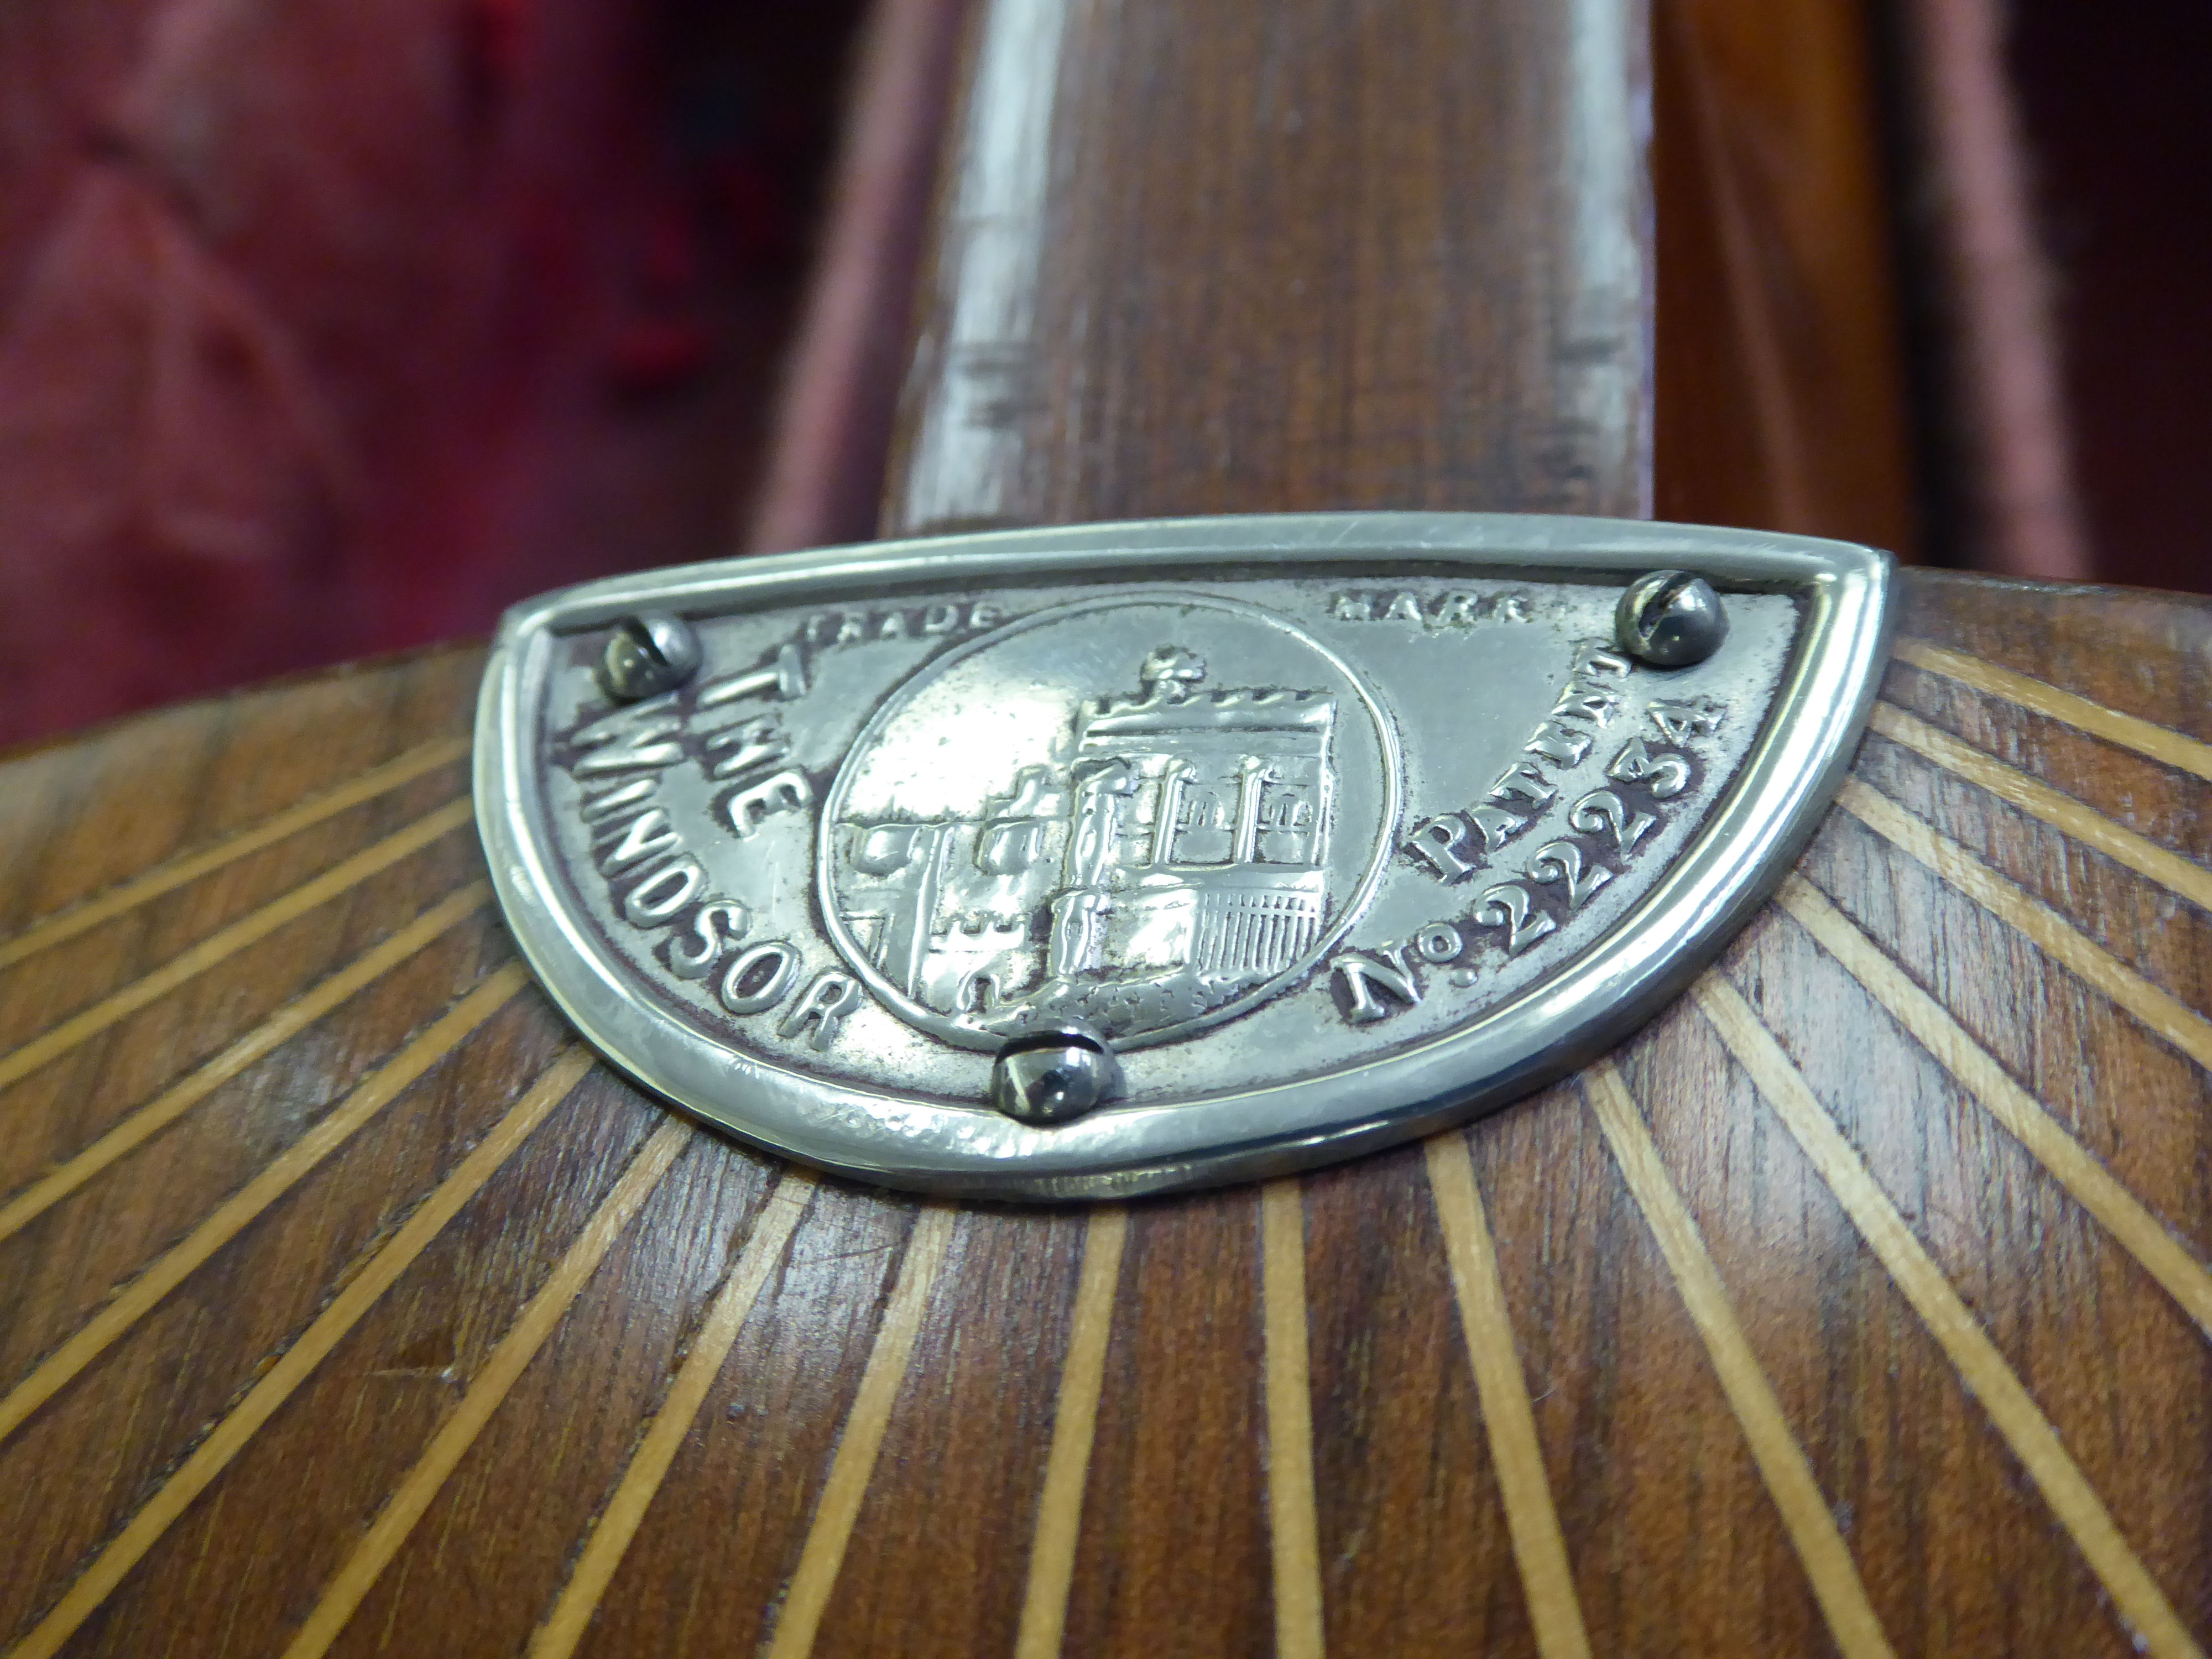 'The Windsor' rosewood cased five string banjo stamped no. - Image 4 of 4